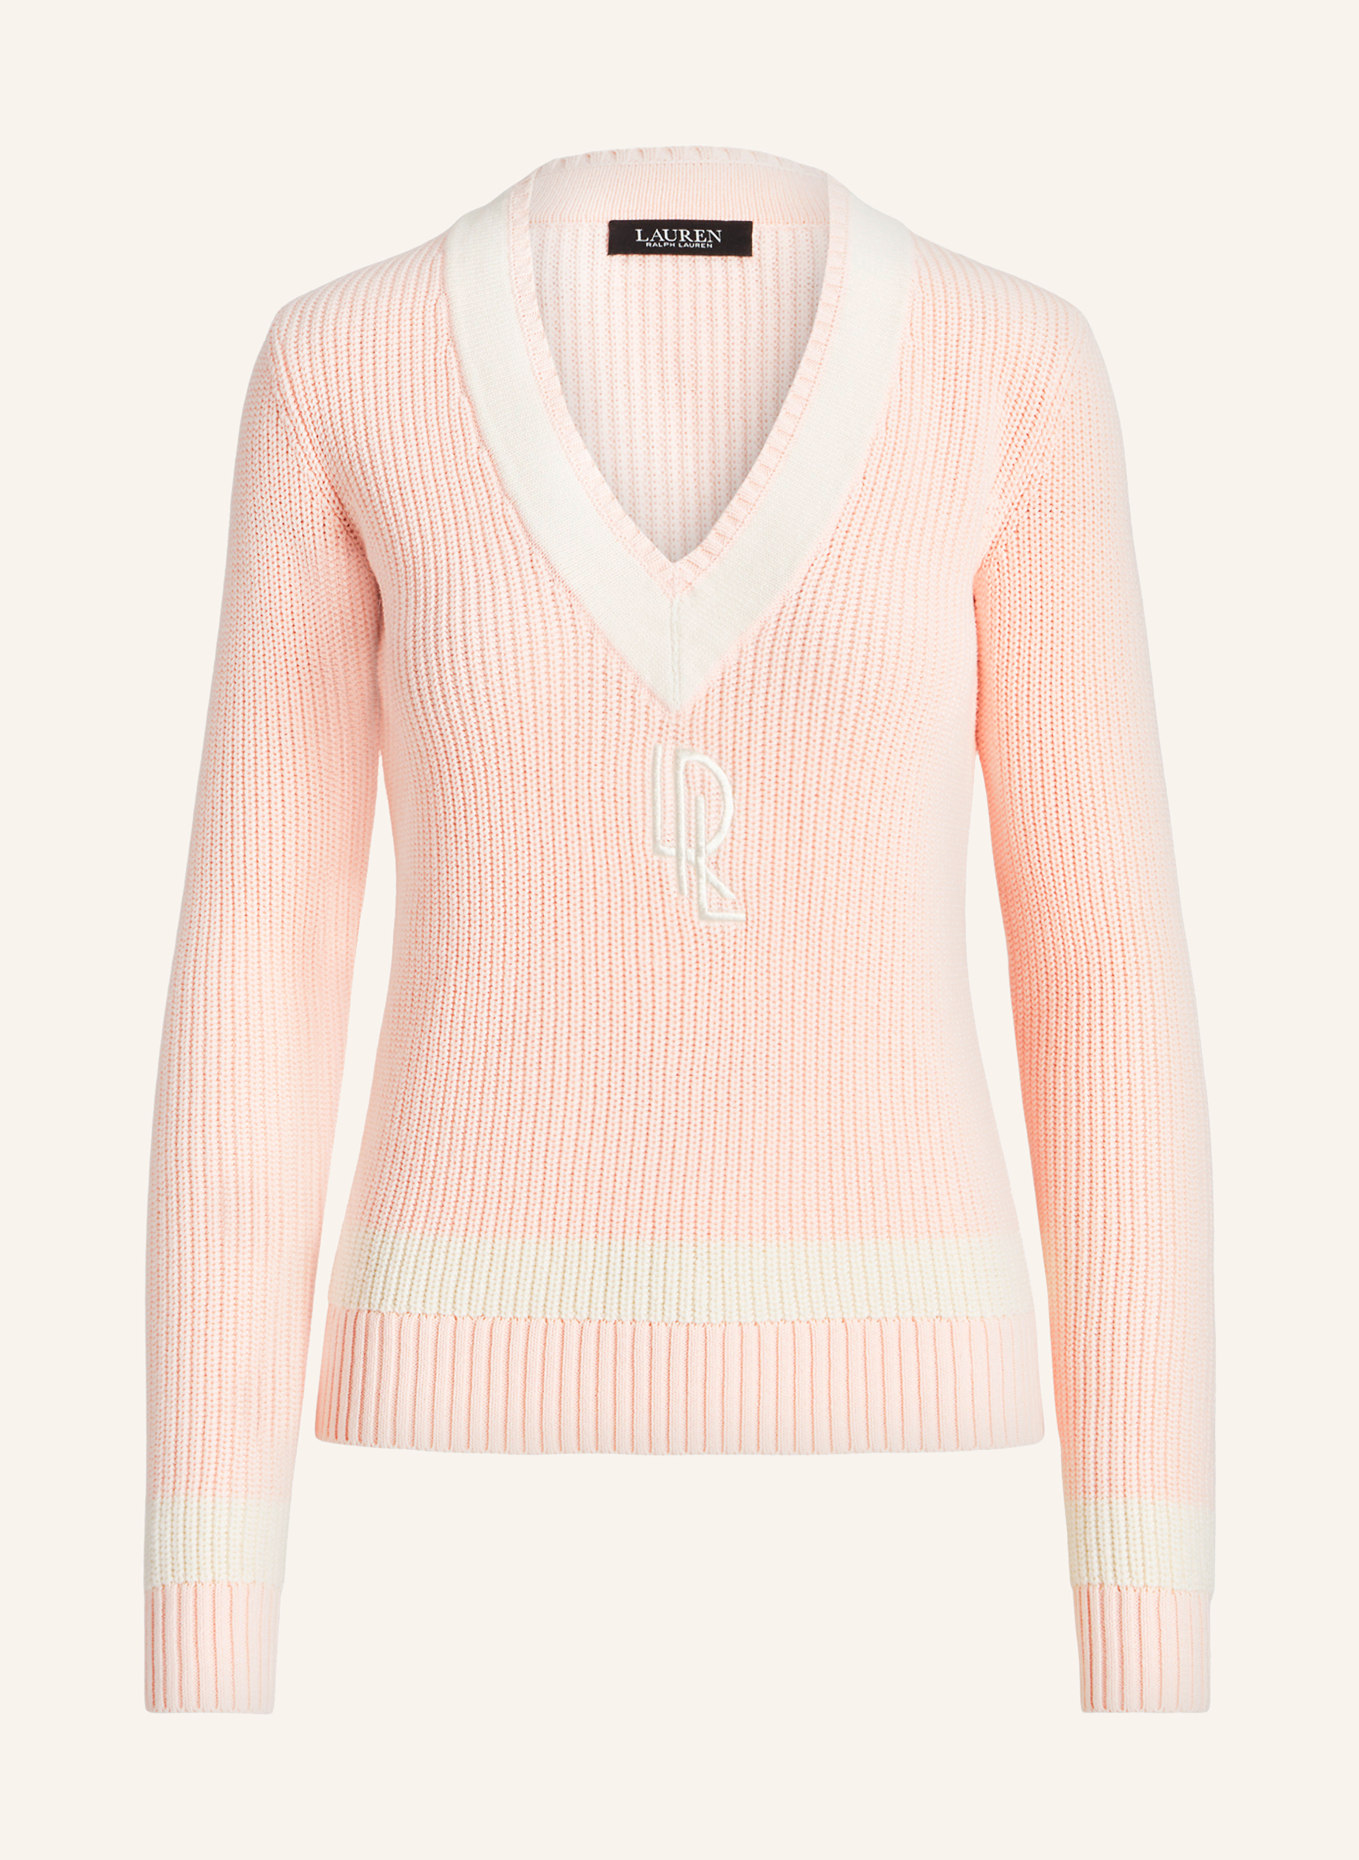 LAUREN RALPH LAUREN Pullover, Farbe: HELLROSA/ CREME (Bild 1)